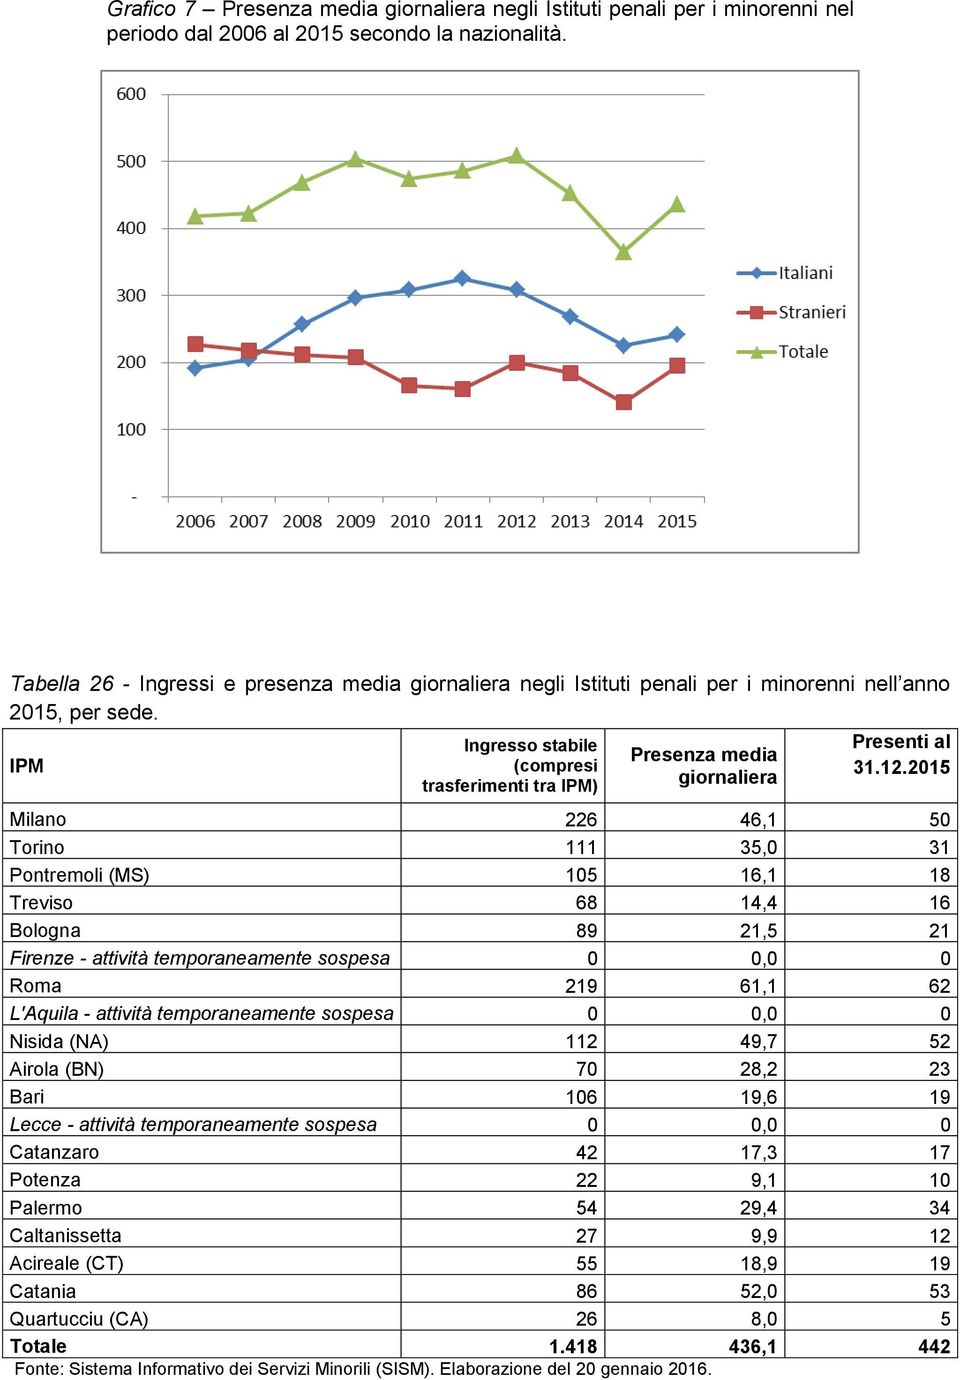 IPM Ingresso stabile (compresi trasferimenti tra IPM) Presenza media giornaliera Presenti al 31.12.